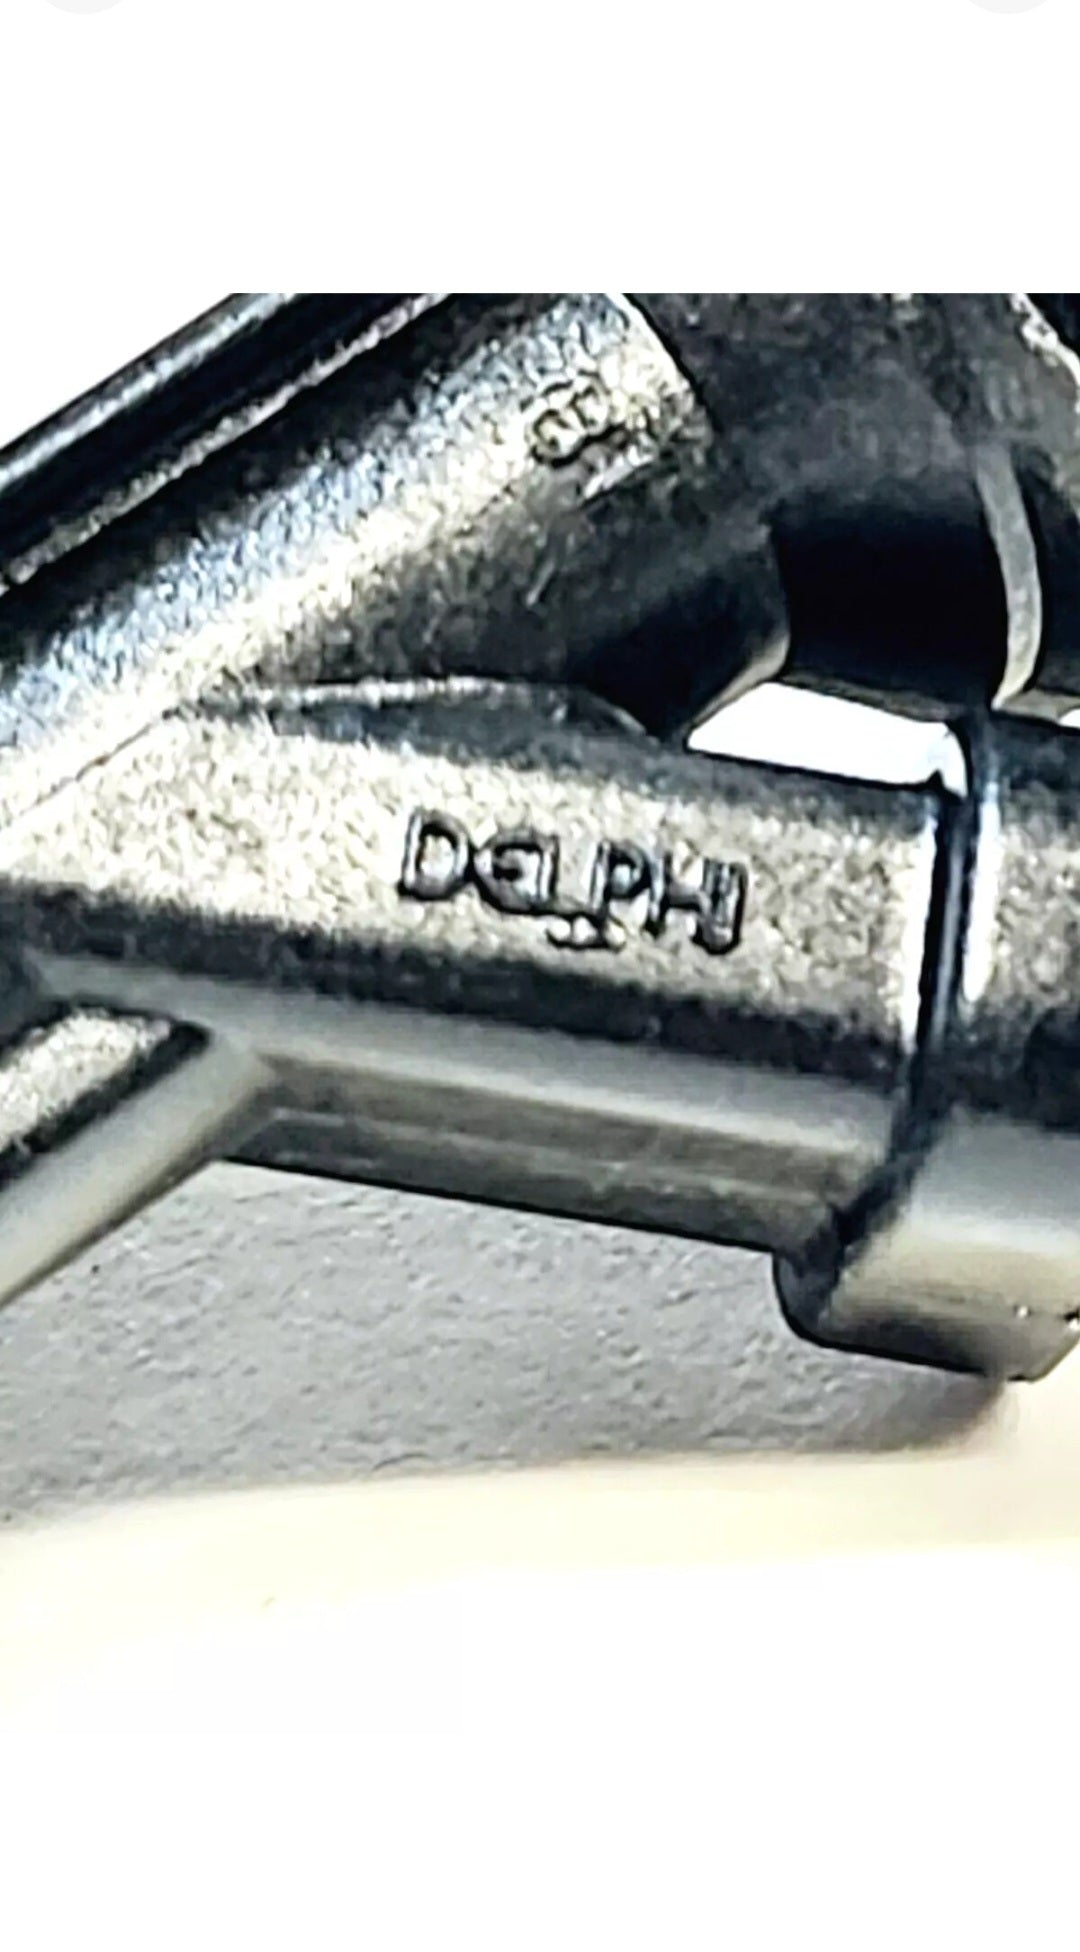 6 Genuine Delphi 12586551 / FJ10480 / 217-1601 fuel injectors